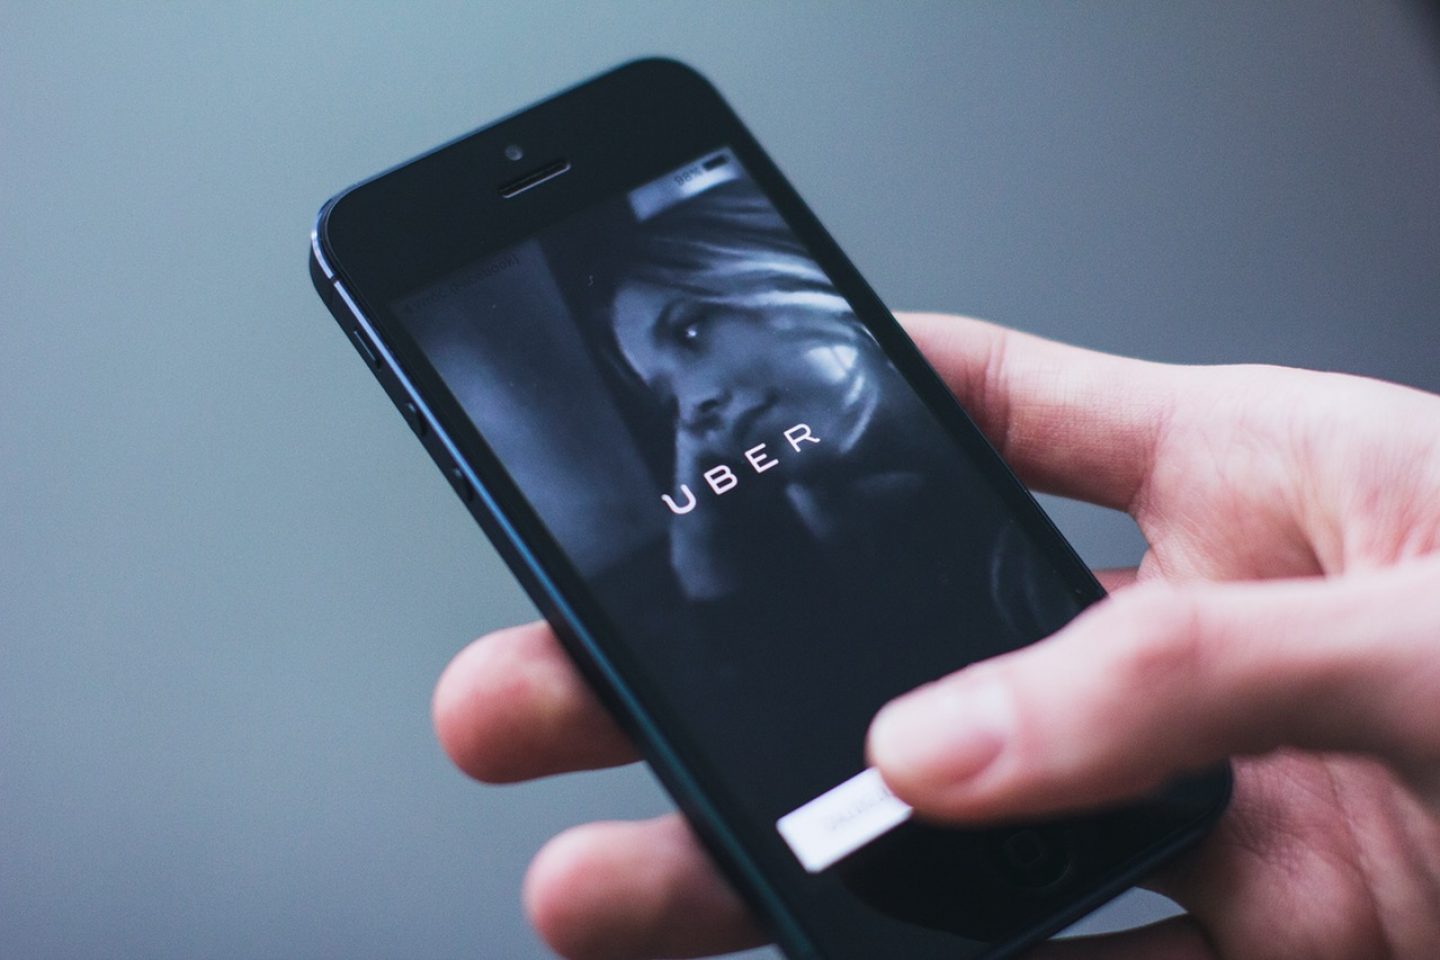 London verweigert Uber die Verlängerung der Lizenz